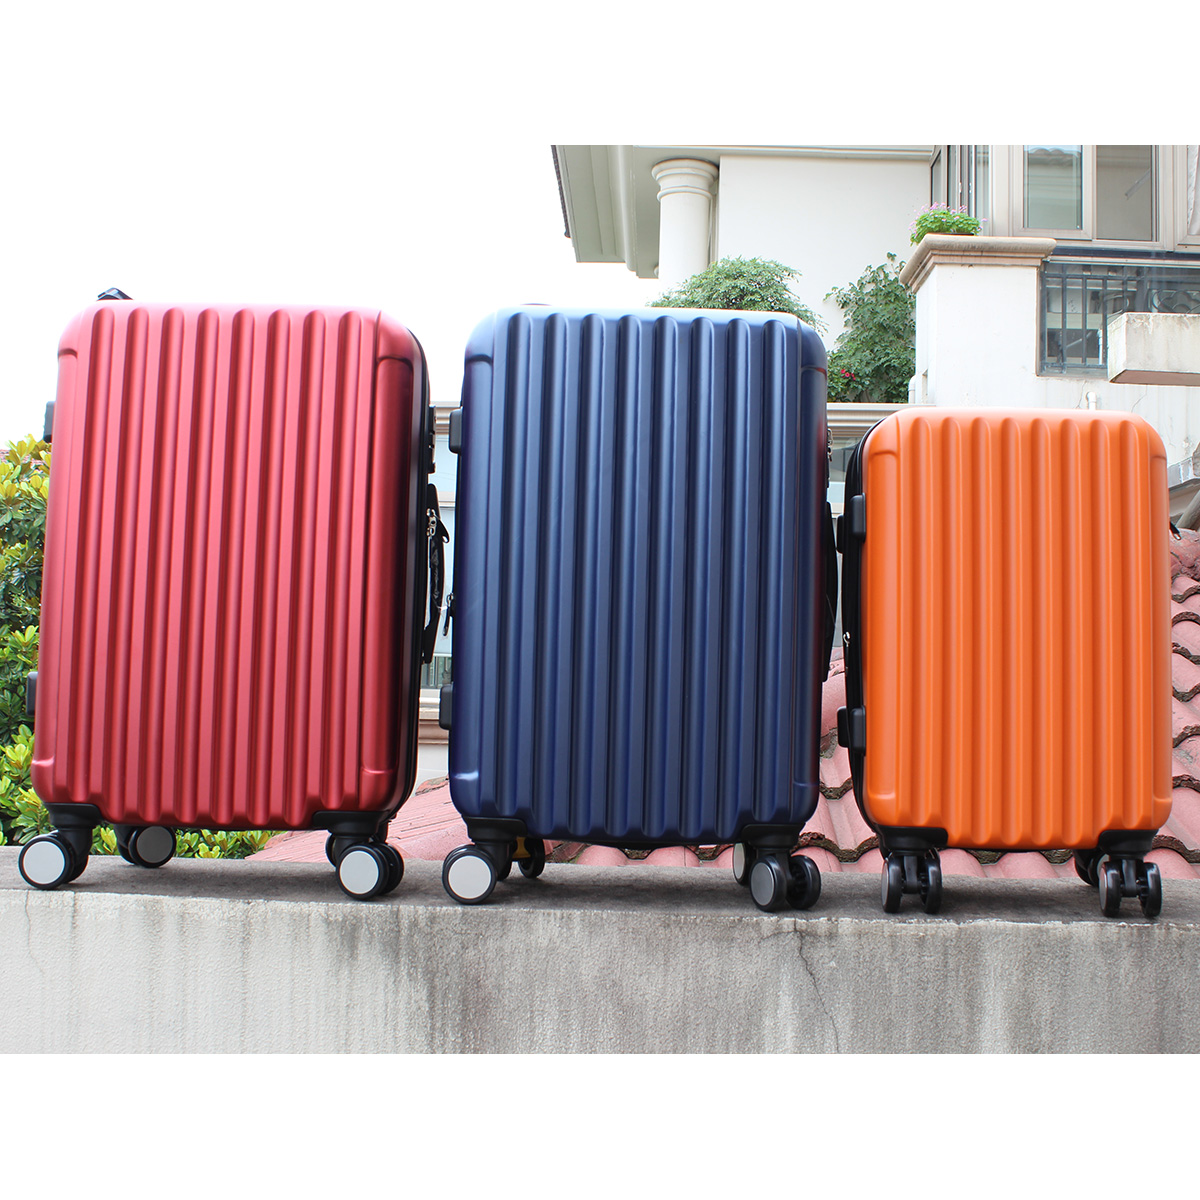 韩国名牌Cambridge拉杆箱子pet高档耐用旅行条纹桔黄蓝酒红色bag